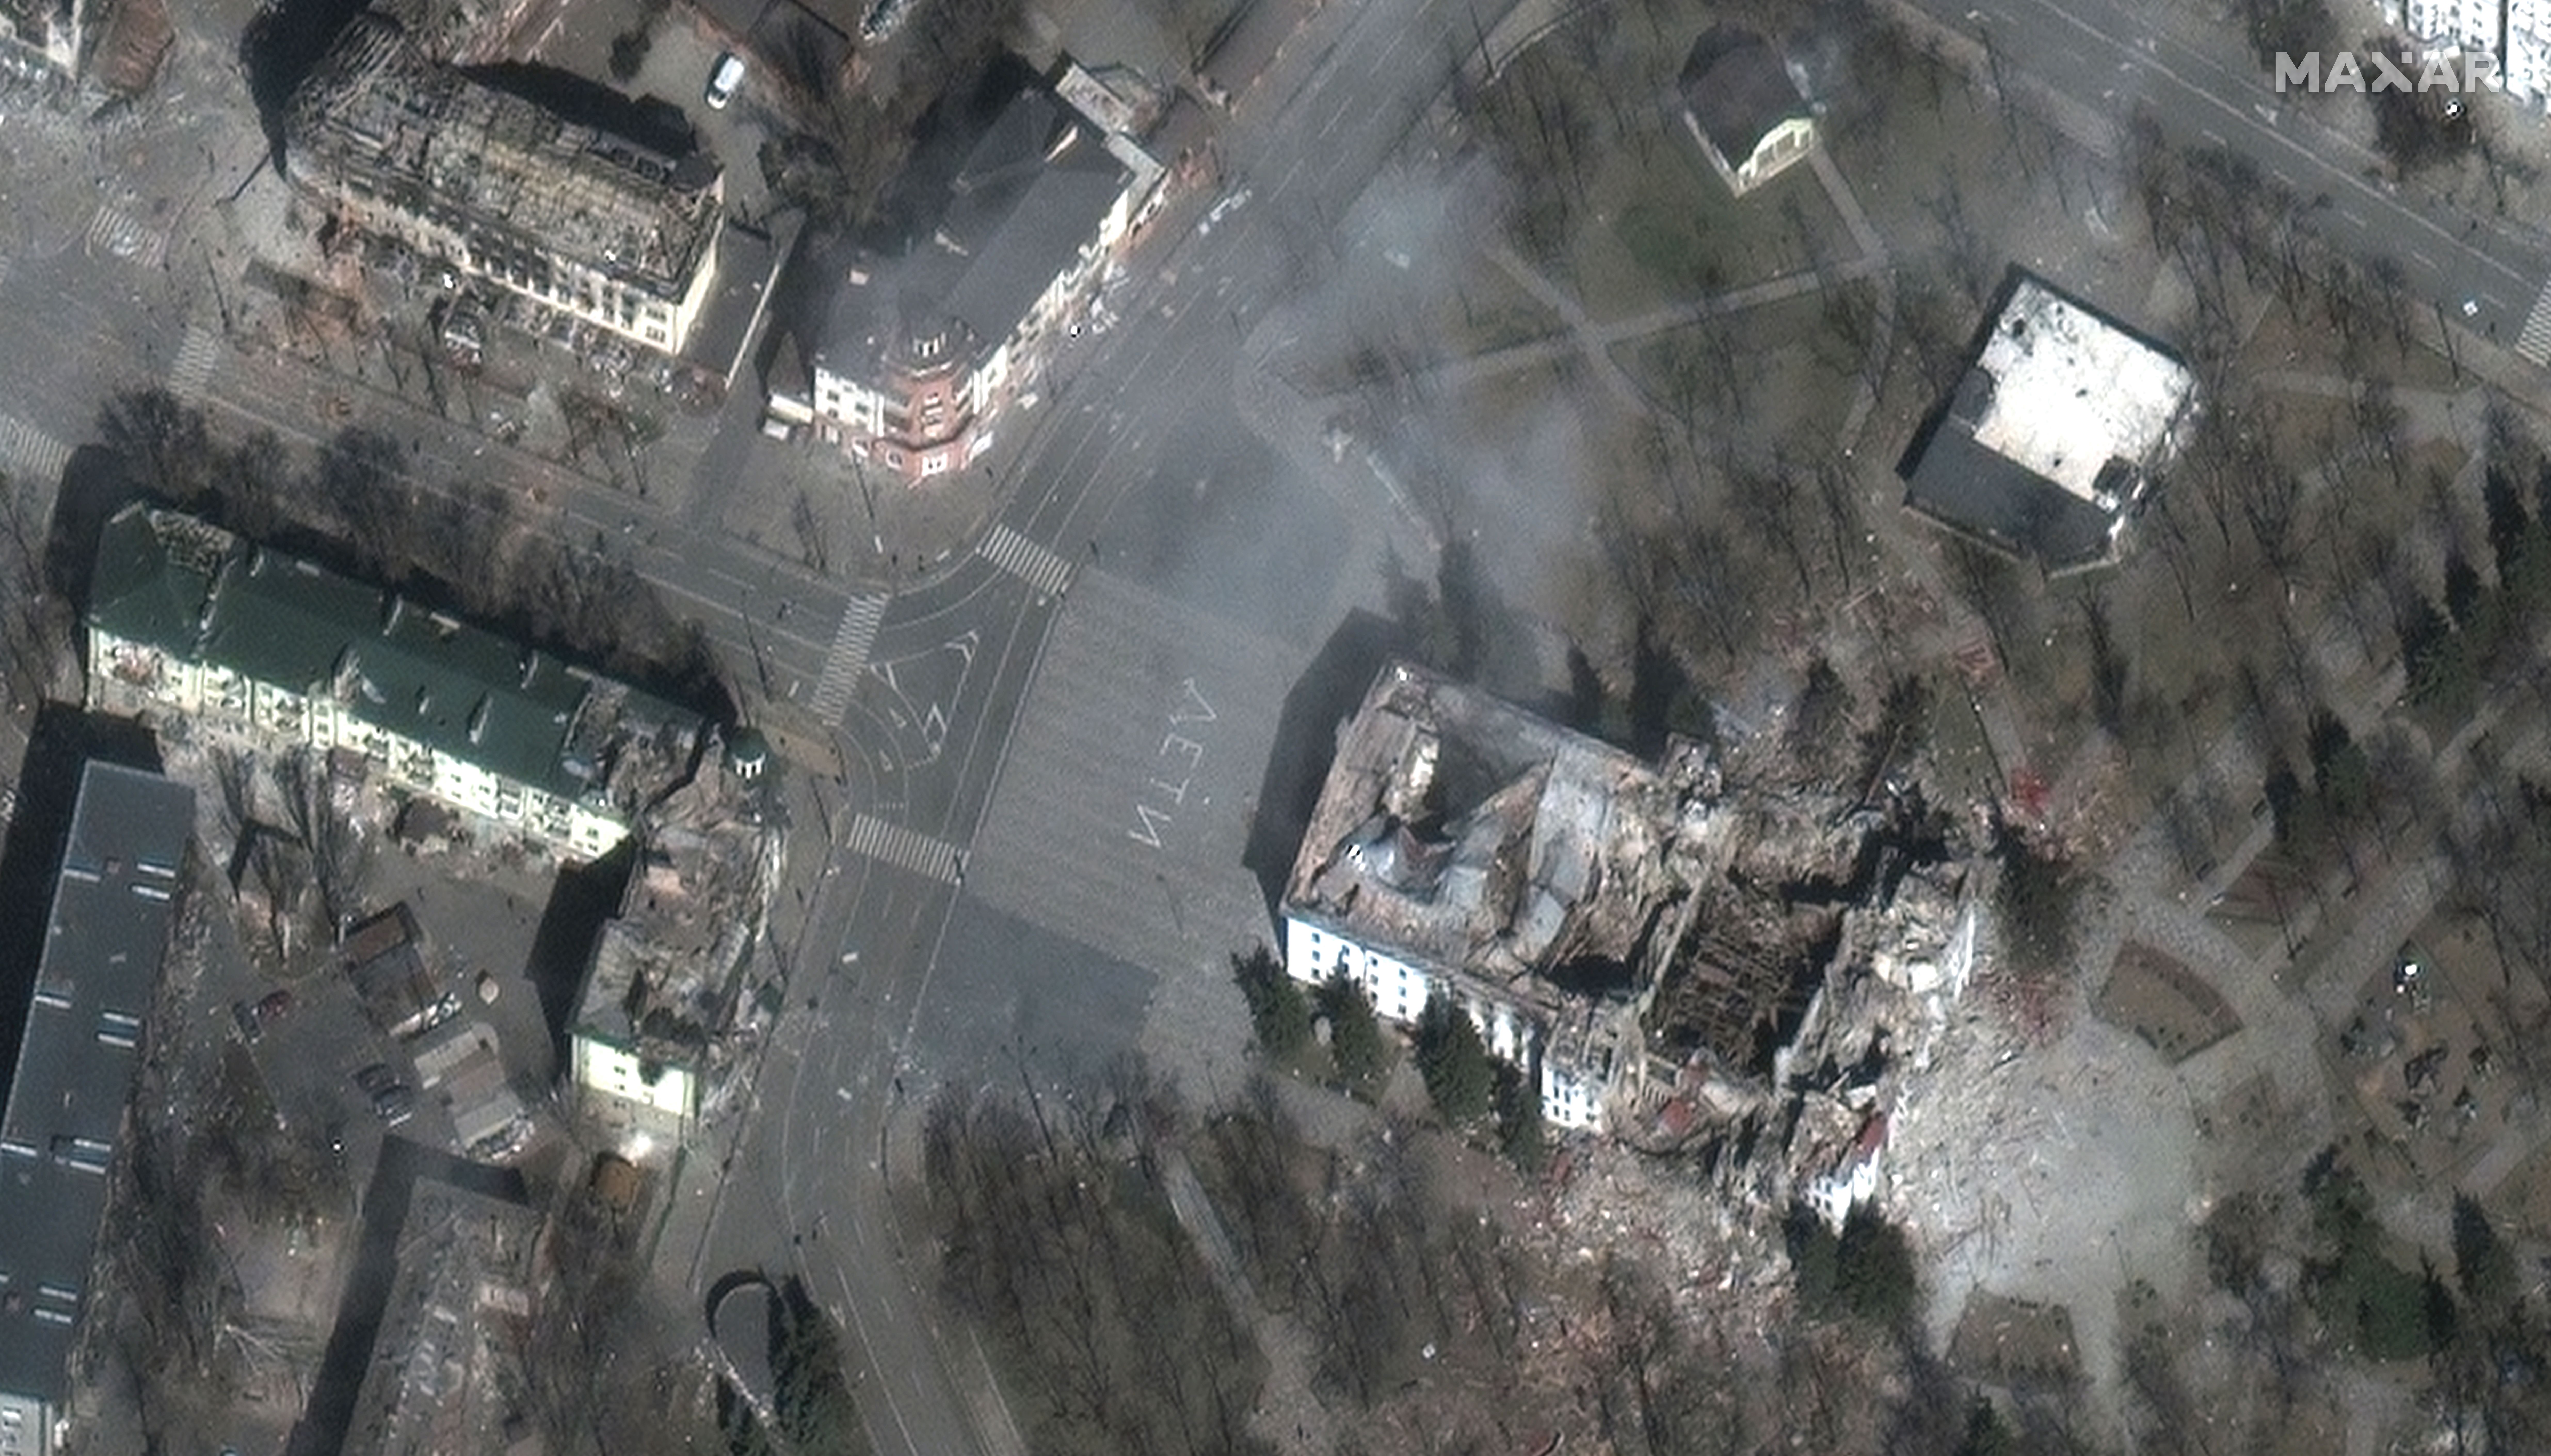 Am 29. März wurden das Mariupol-Theater und seine Umgebung in der Stadt Mariupol schwer beschädigt.